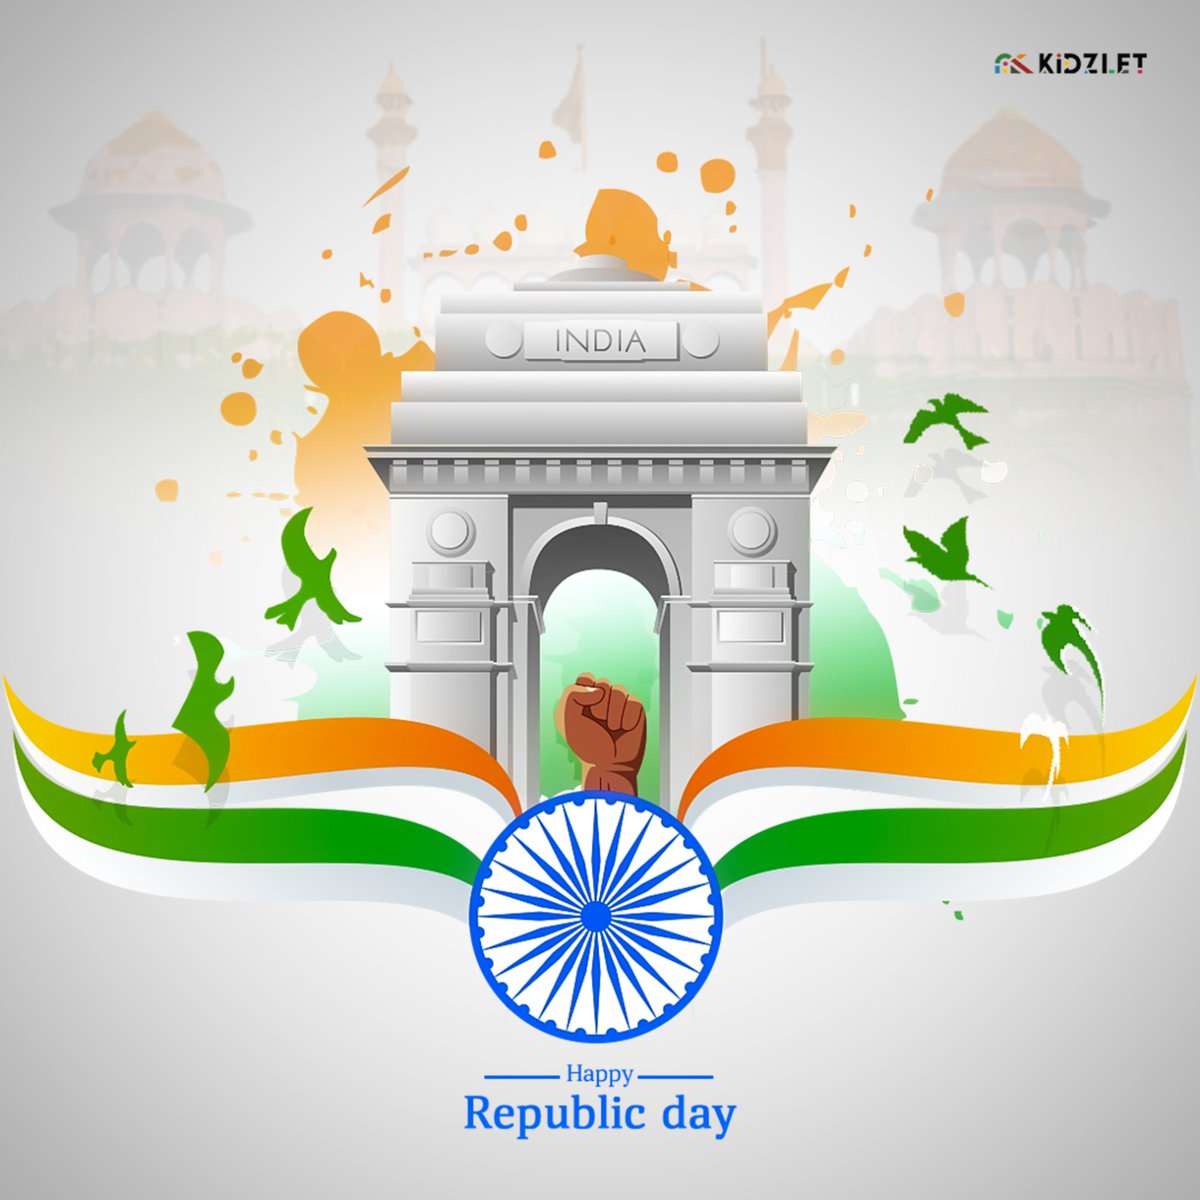 Happy Republic Day🇮🇳

#kidzlet #republicday #happyrepublicday #india #hindustan #bharat #janganman #playground #26january #january #nationalpark #nationalanthem #republicindia #saarejahanseaccha #indiatravelgram #hindustanzindabad #swatantratadivas🇮🇳